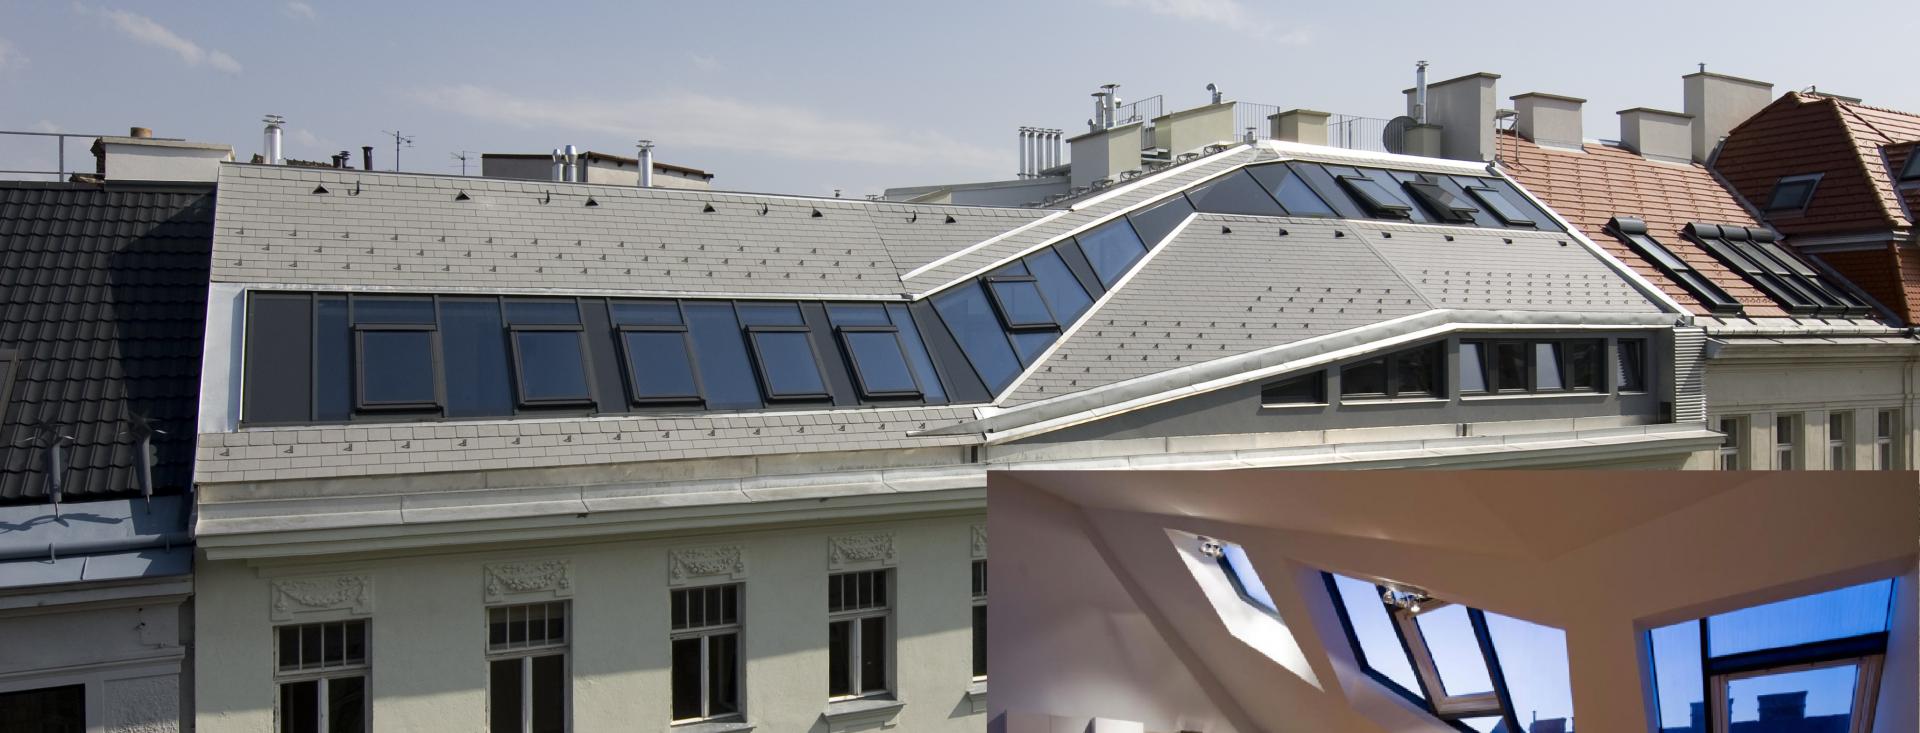 BAUMANN GLAS Dachgeschossausbauten